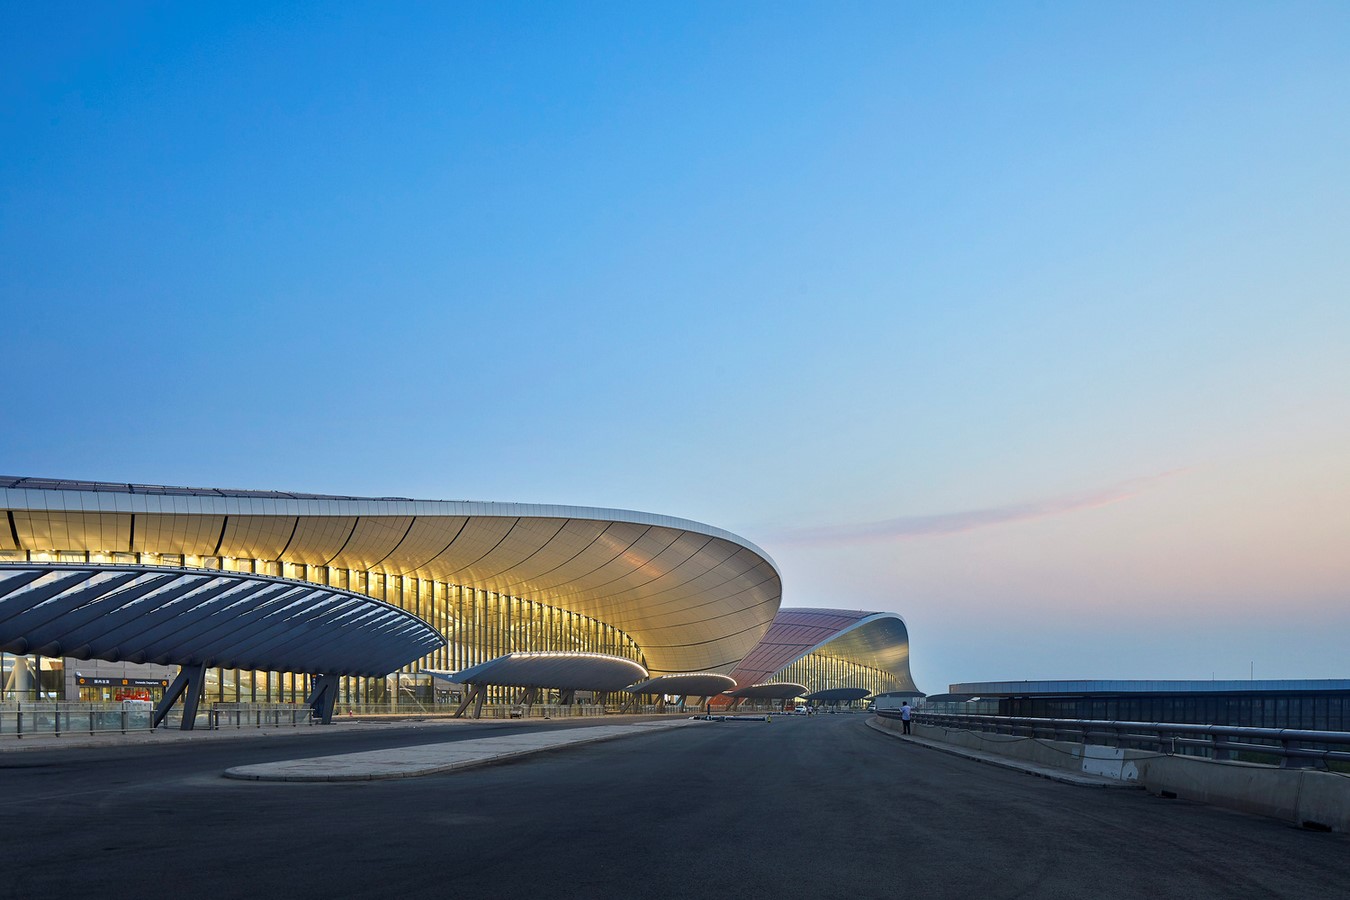 10 Inspirerende Luchthaven ontwerpen rond de wereld - Blad1